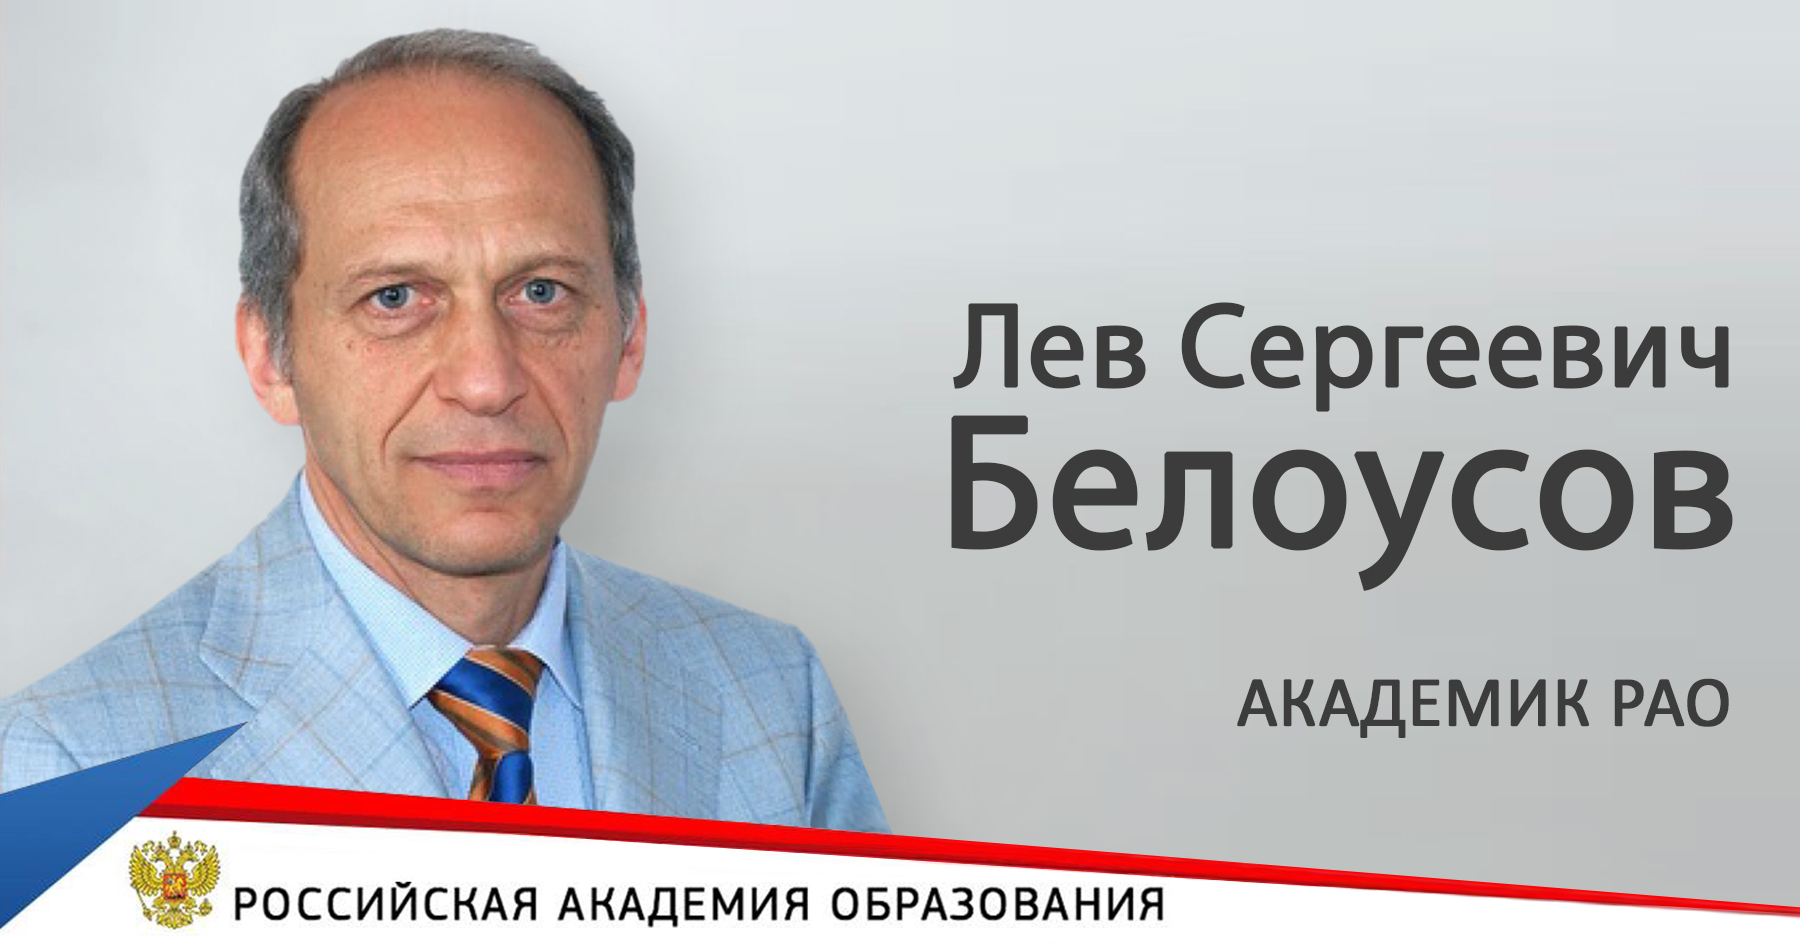 Л.С.Белоусов избран действительным членом Российской академии образования